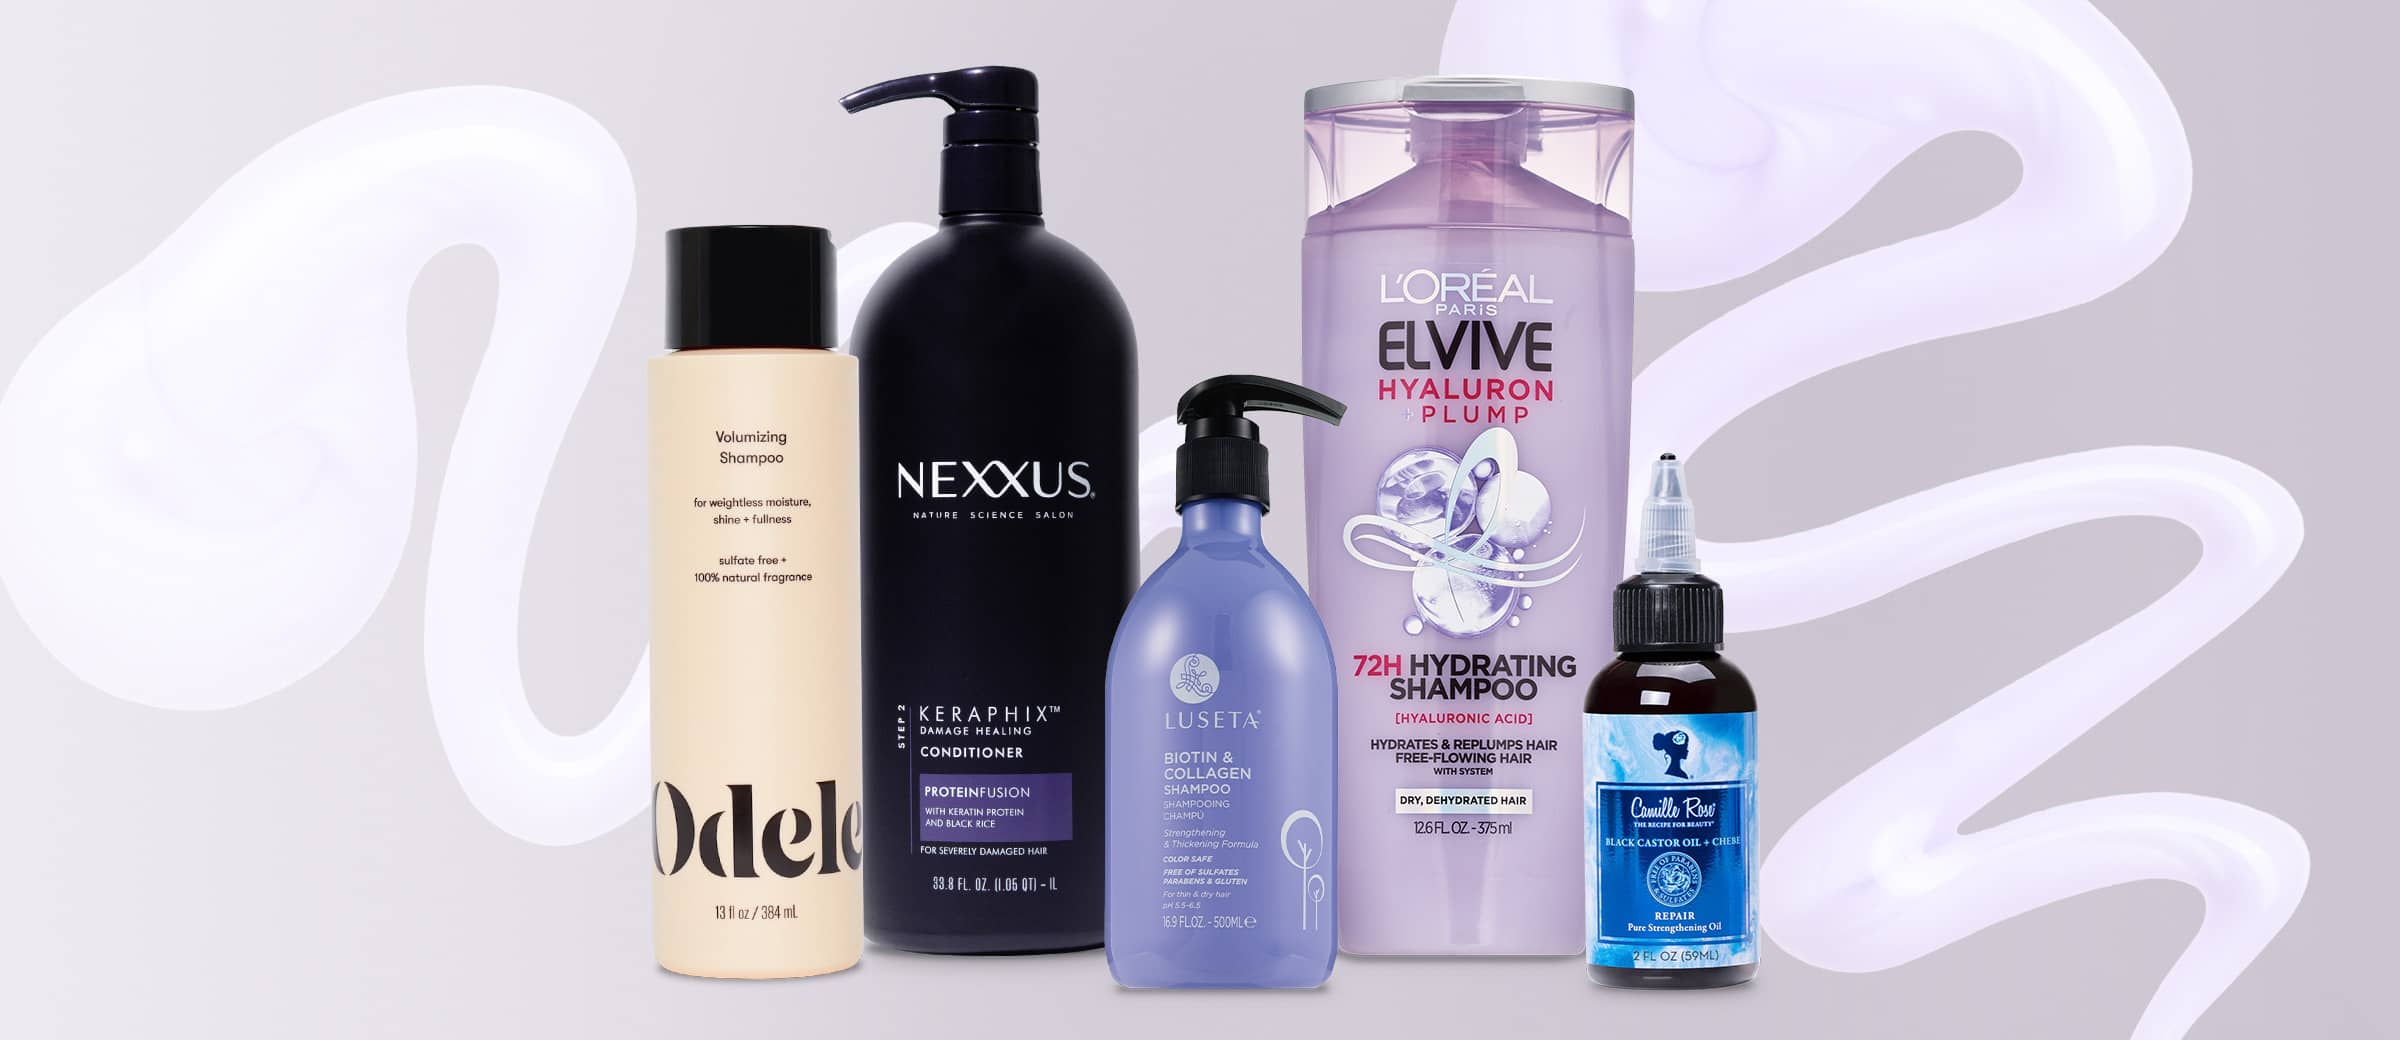 Productos para el cabello Odele, Nexxus, Luseta, L'Oréal Paris Elvive y Camille Rose